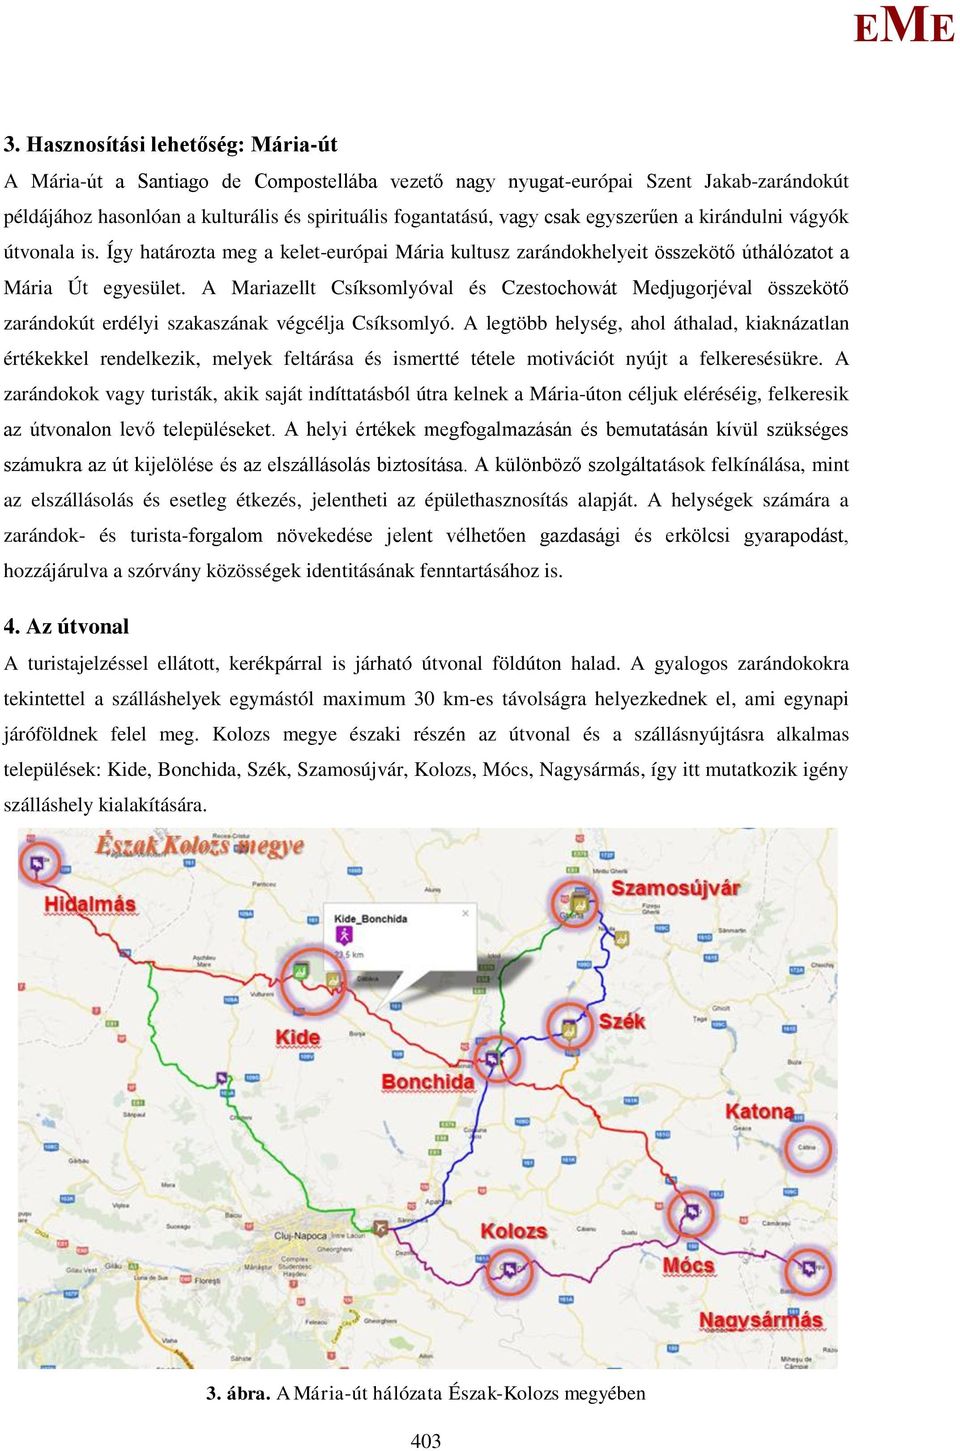 A ariazellt Csíksomlyóval és Czestochowát edjugorjéval összekötő zarándokút erdélyi szakaszának végcélja Csíksomlyó.